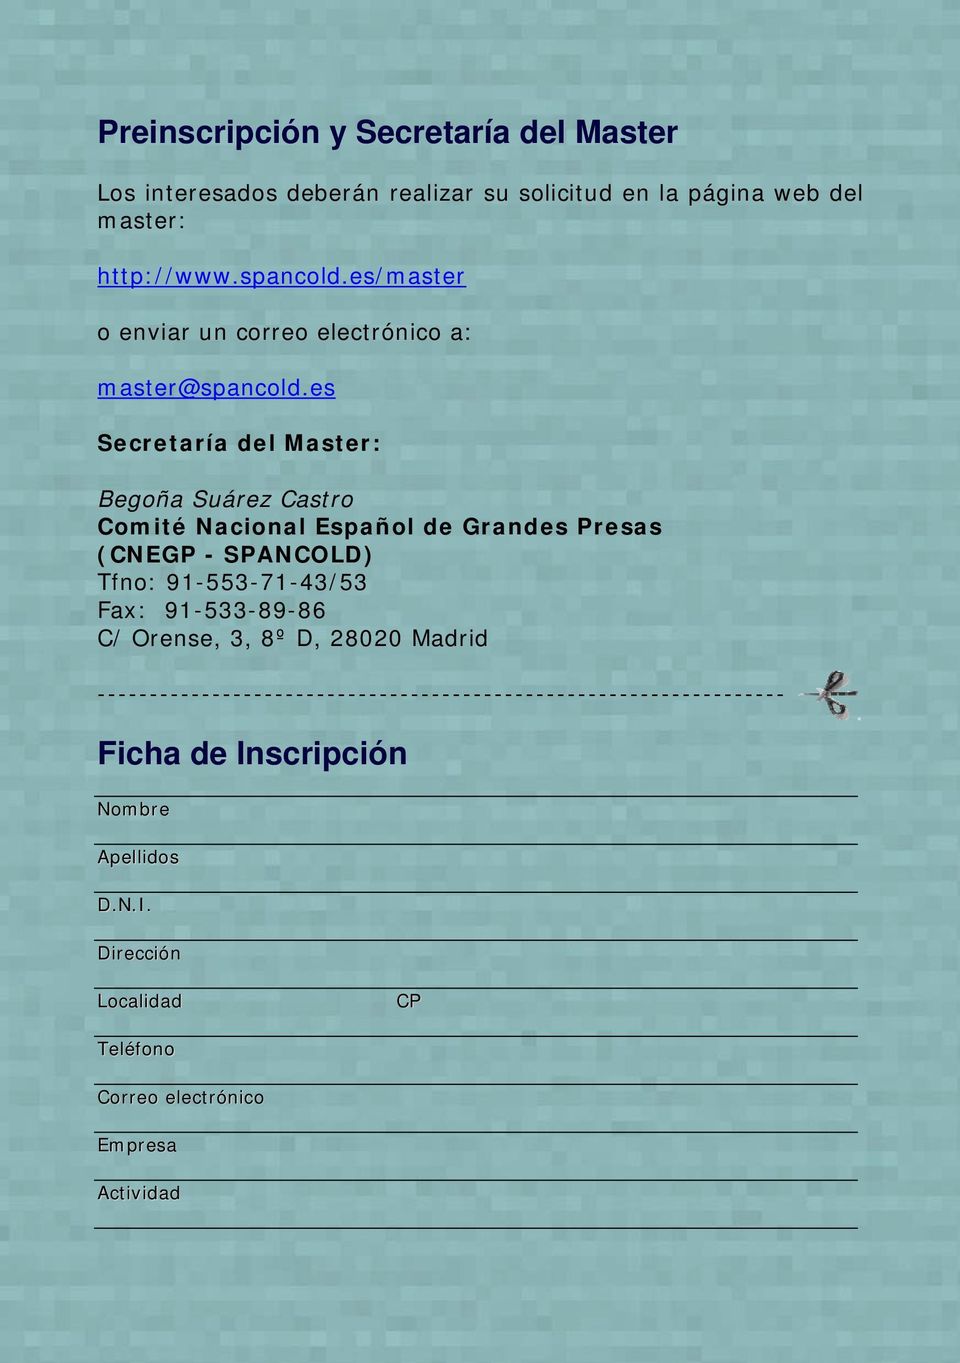 es Secretaría del Master: Begoña Suárez Castro Comité Nacional Español de Grandes Presas (CNEGP - SPANCOLD) Tfno: 91-553-71-43/53 Fax: